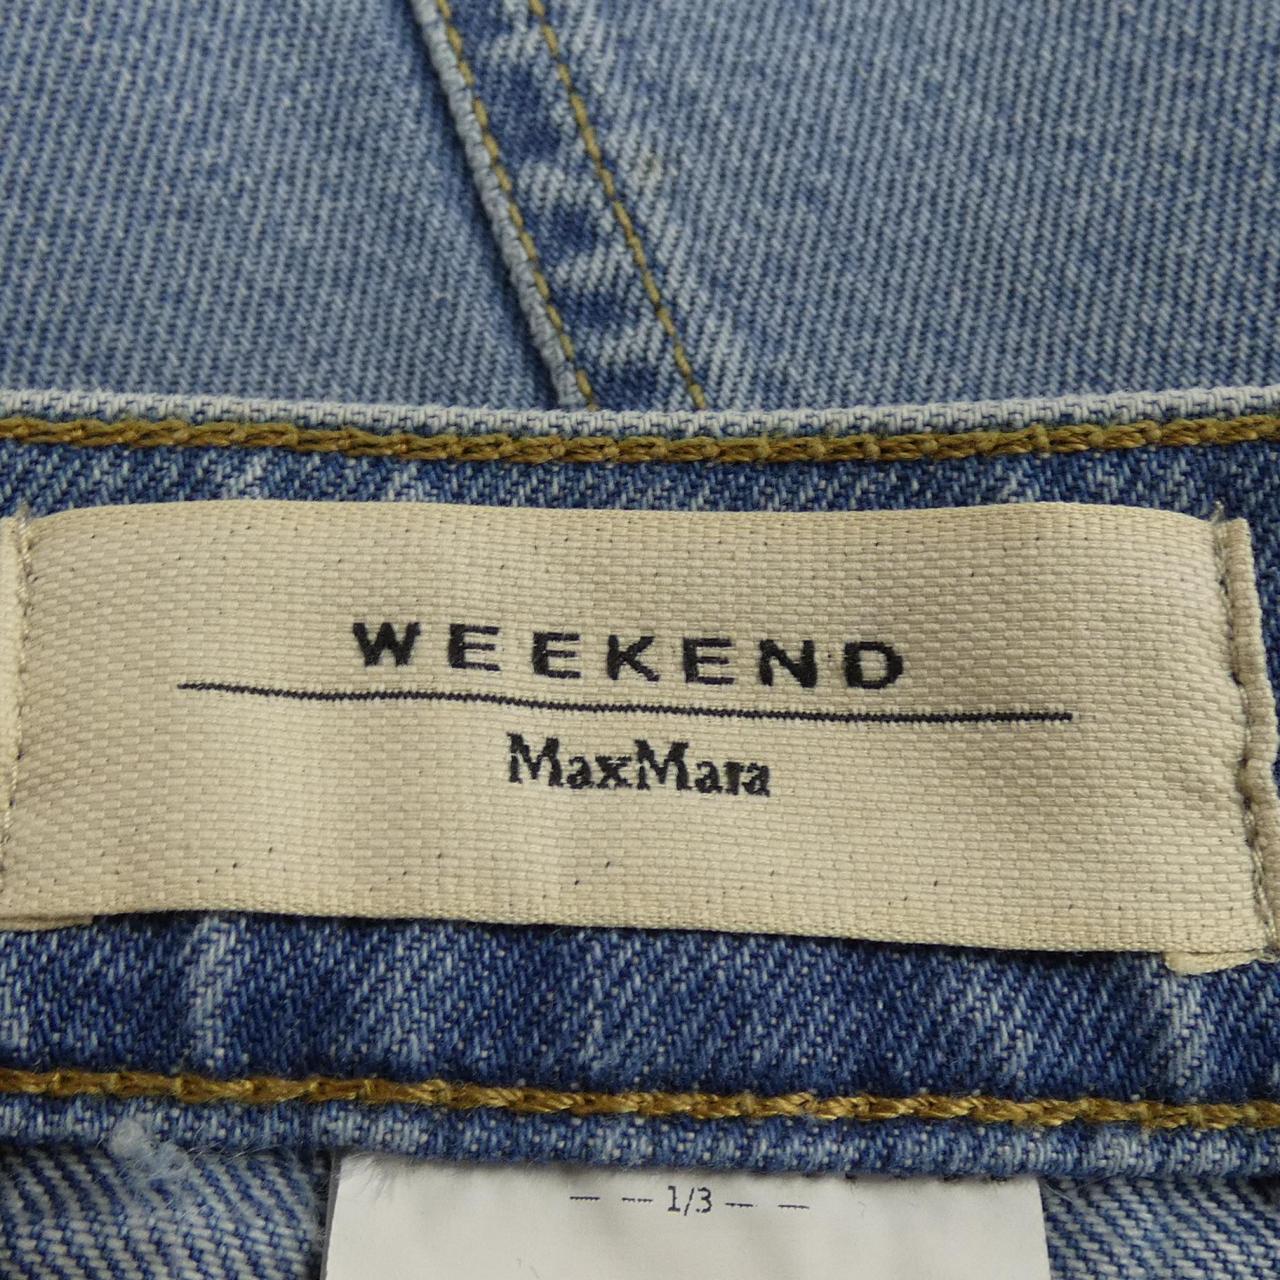 Max Mara weekend max mara weekend skirt